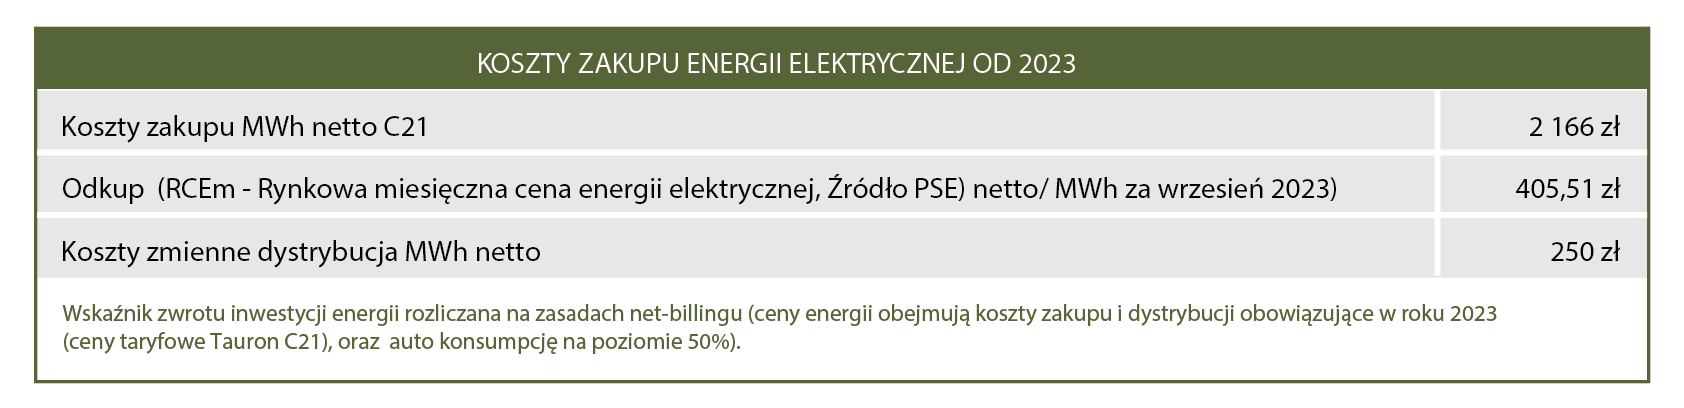 kosz zakupu energii elektrycznej 10-2023